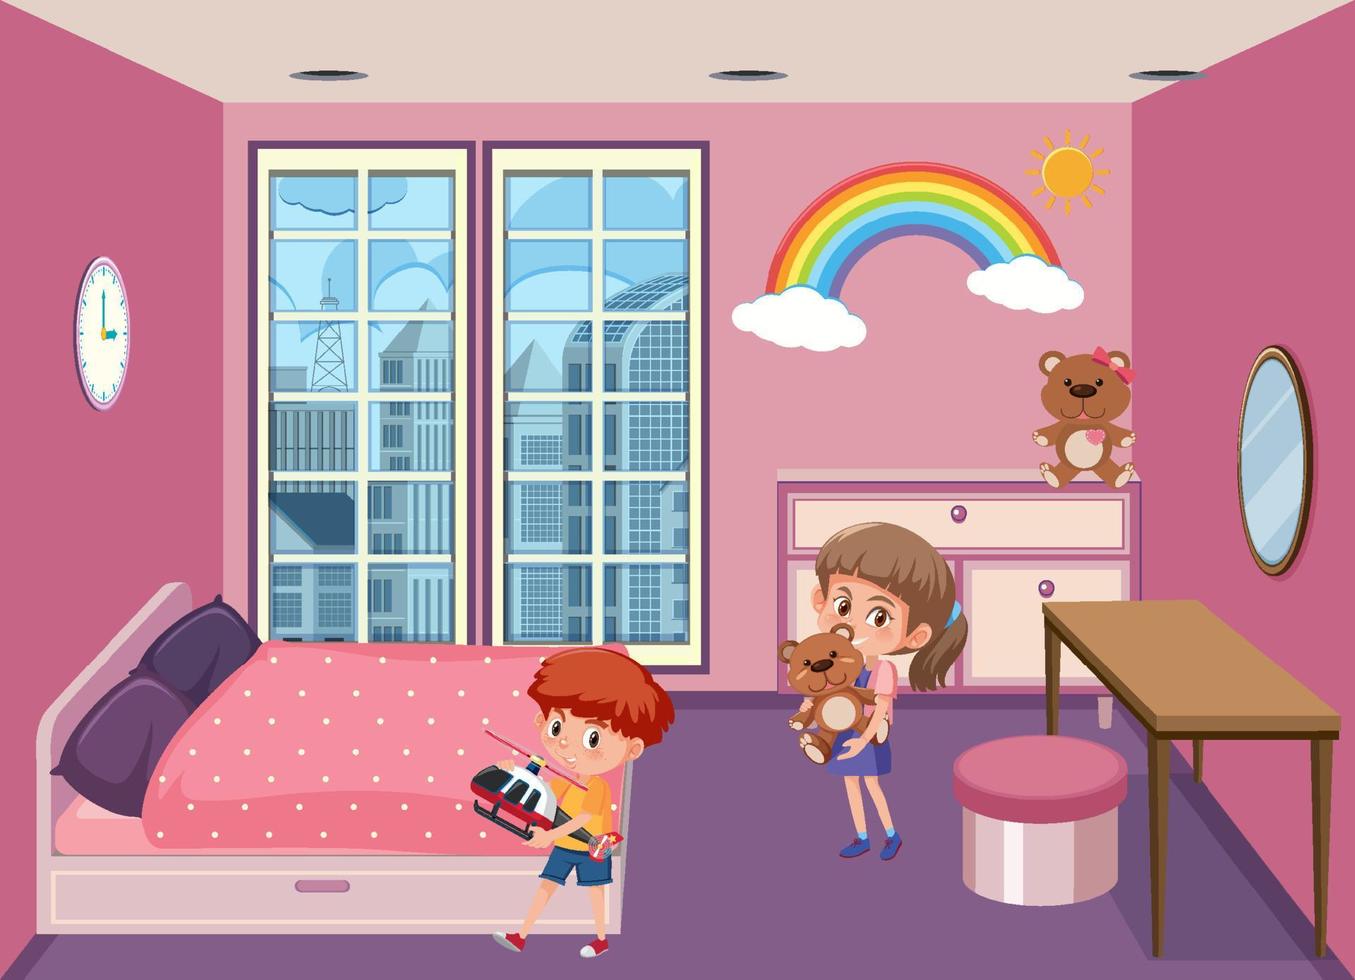 Pink bedroom scene with cartoon character vector